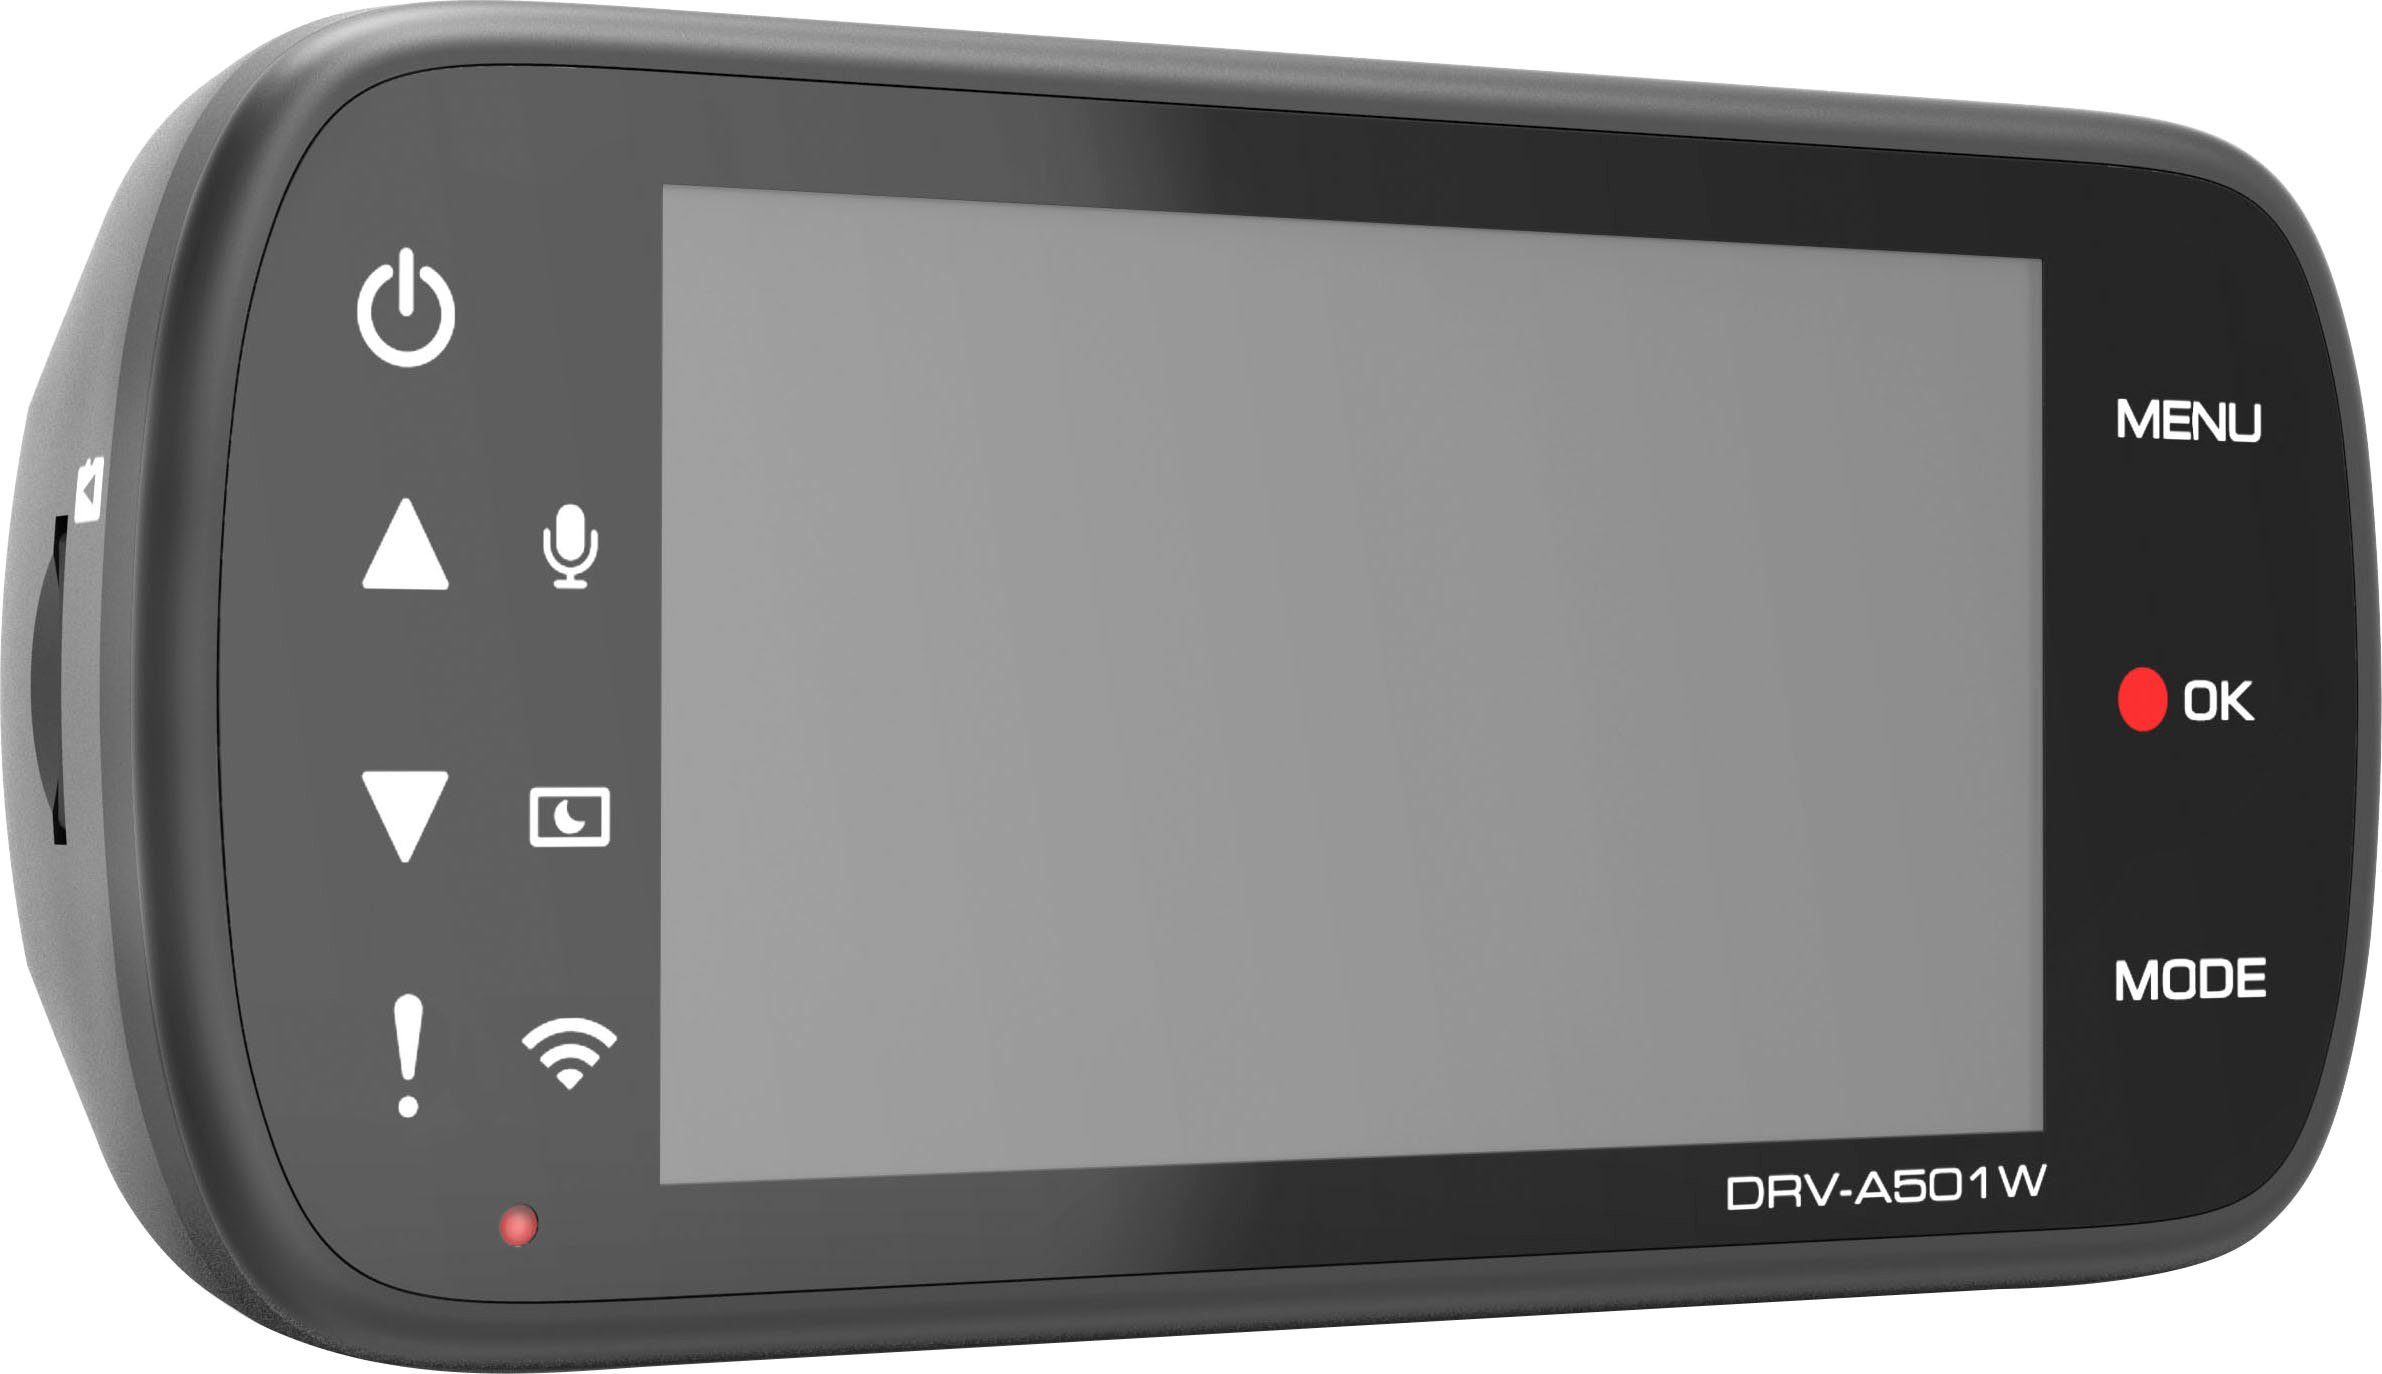 WLAN Kenwood DRV-A501W Dashcam (Wi-Fi) (WQHD,